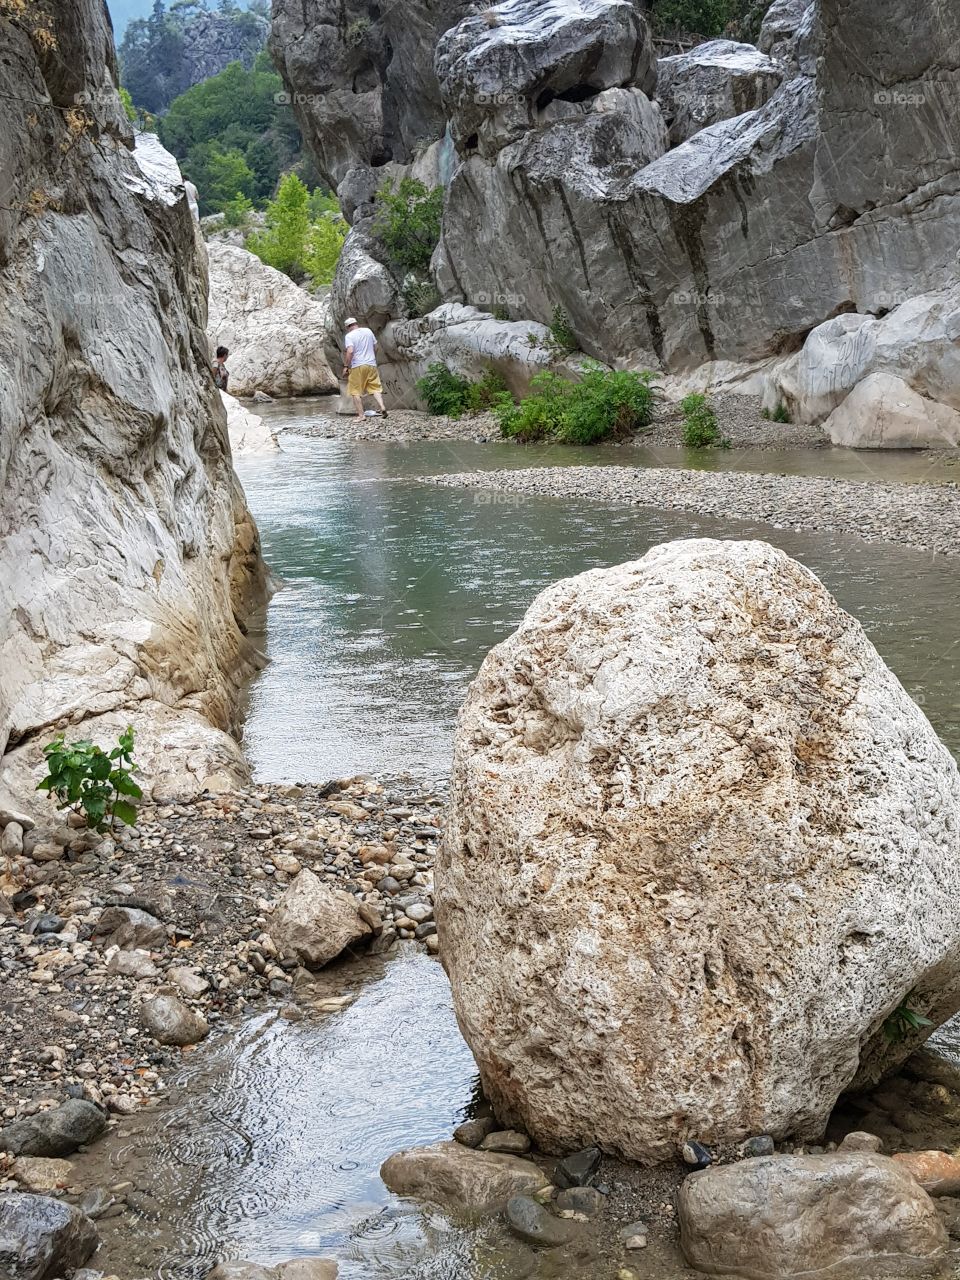 Creek between rocks